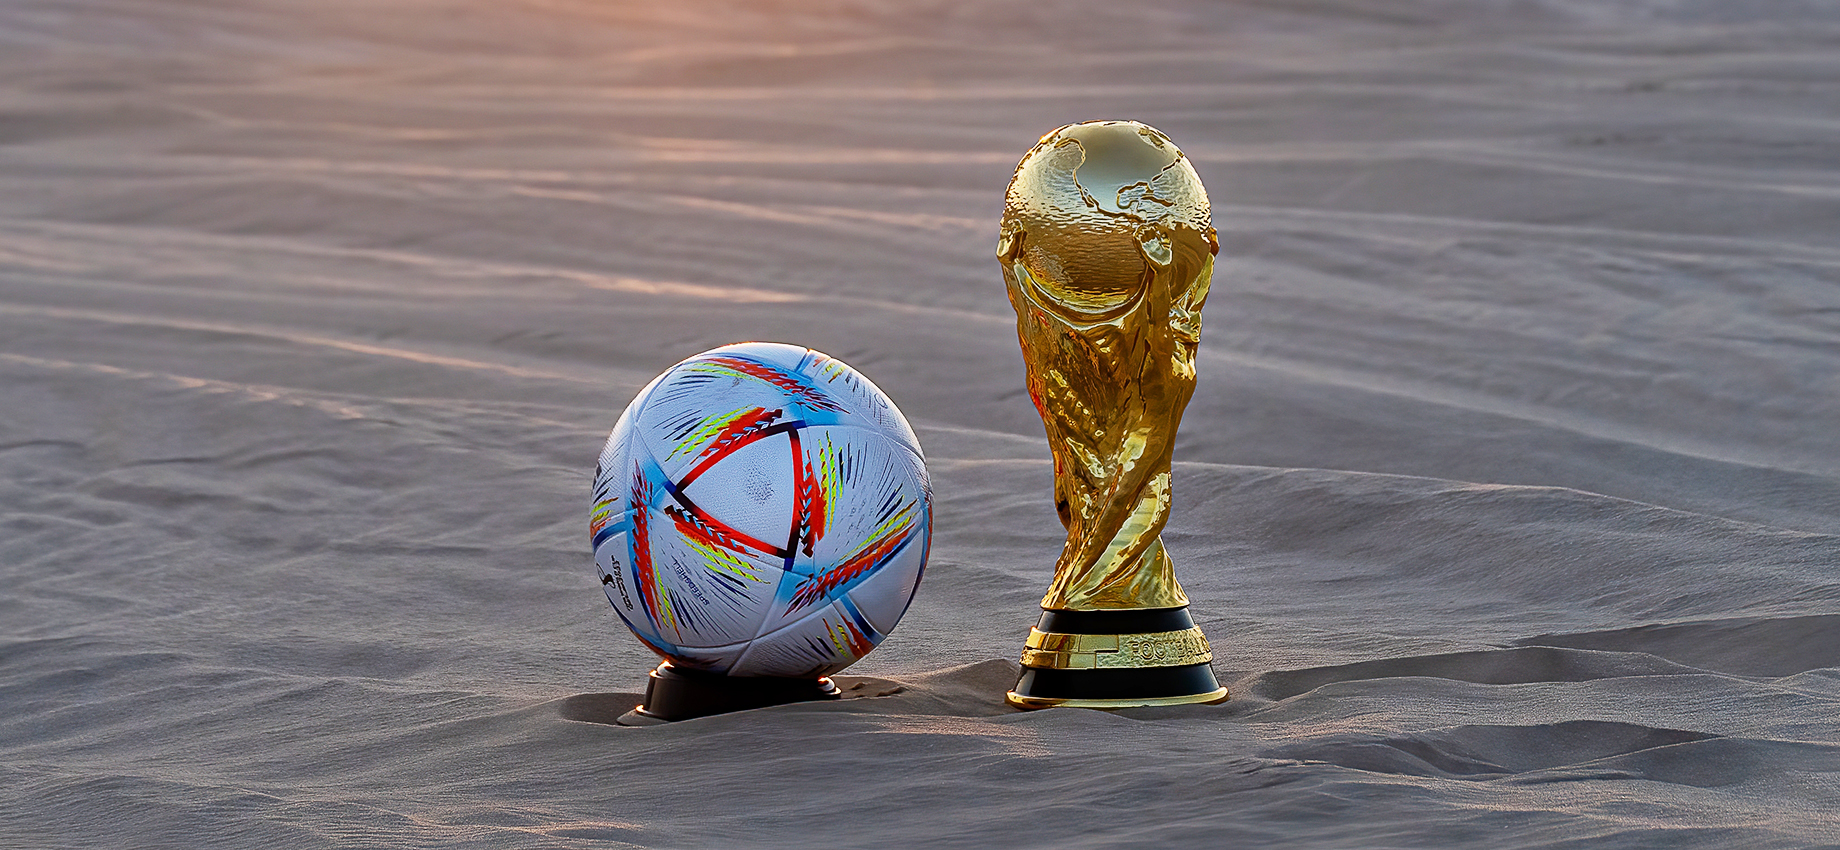 В Катаре начинается чемпионат мира по футболу: где смотреть и за кого болеть